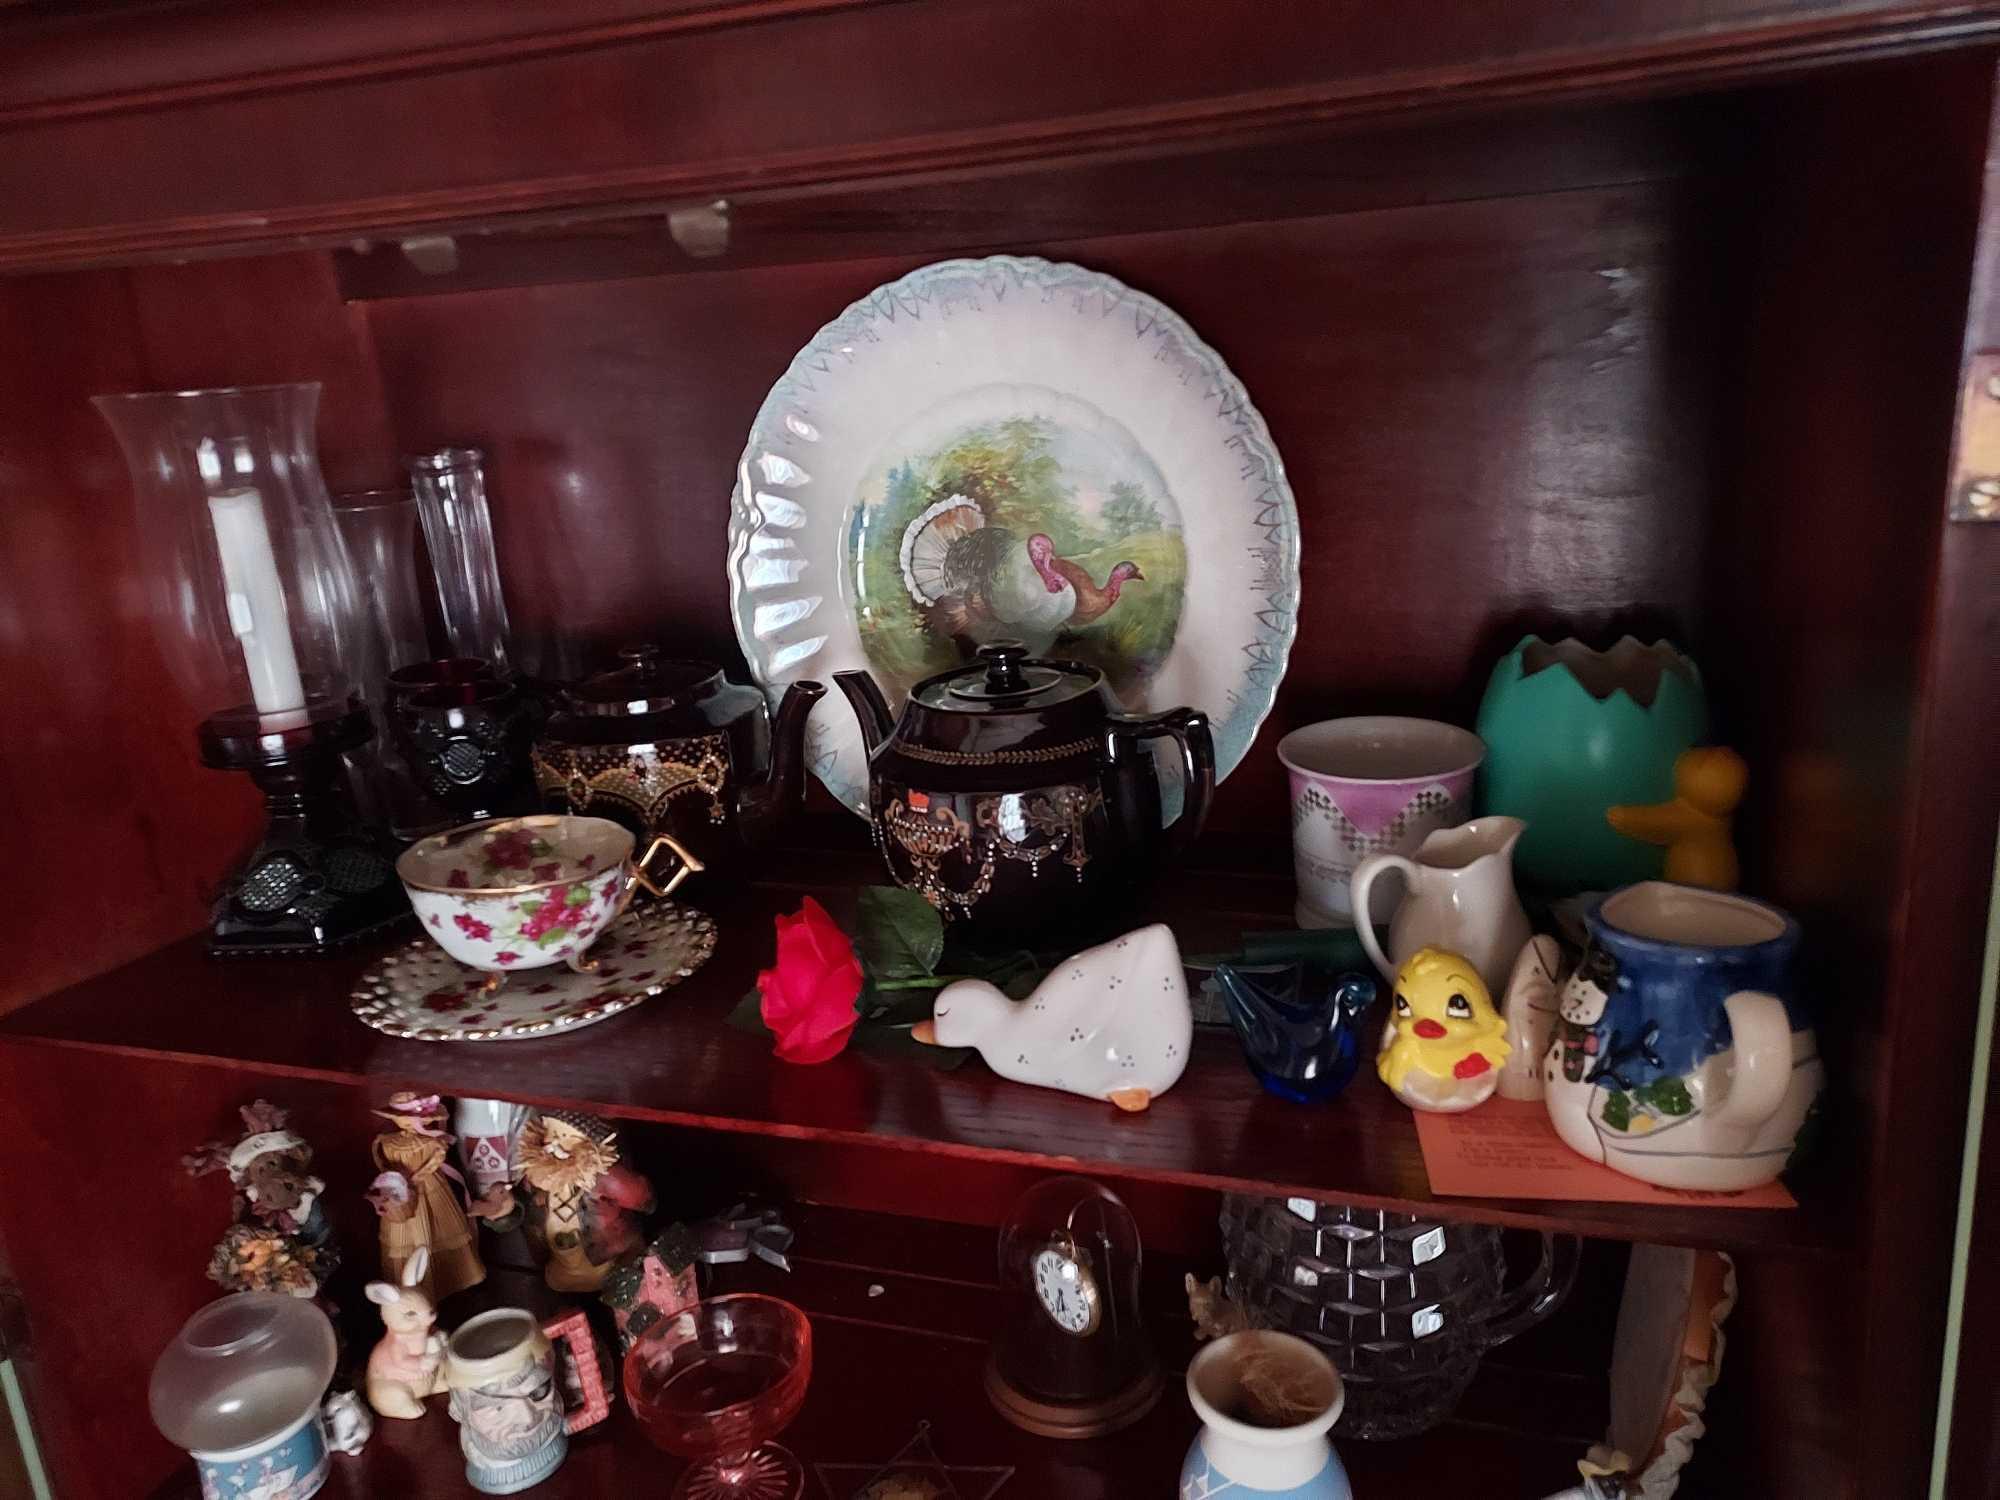 Contents of Curio Cabinet - Glassware, Glass Decor, Small Decor, Placemats, & more